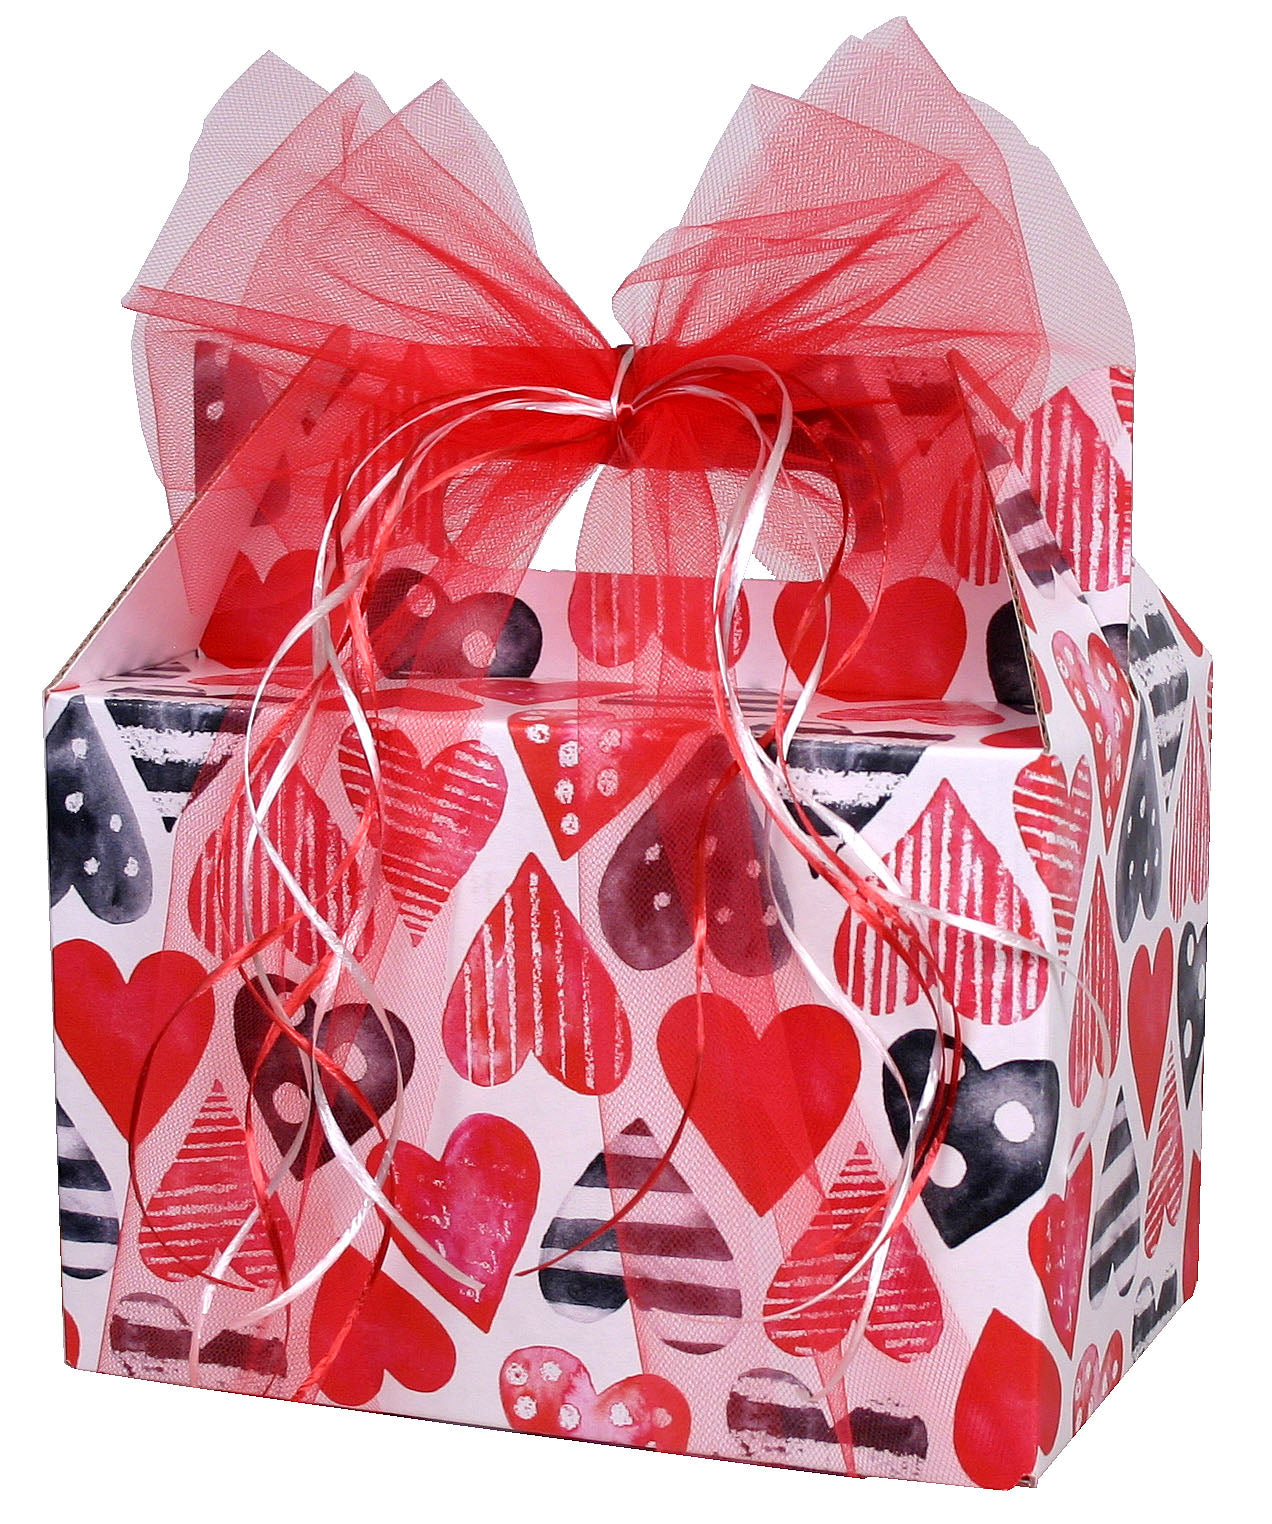 Outta This World Valentine Gift Basket